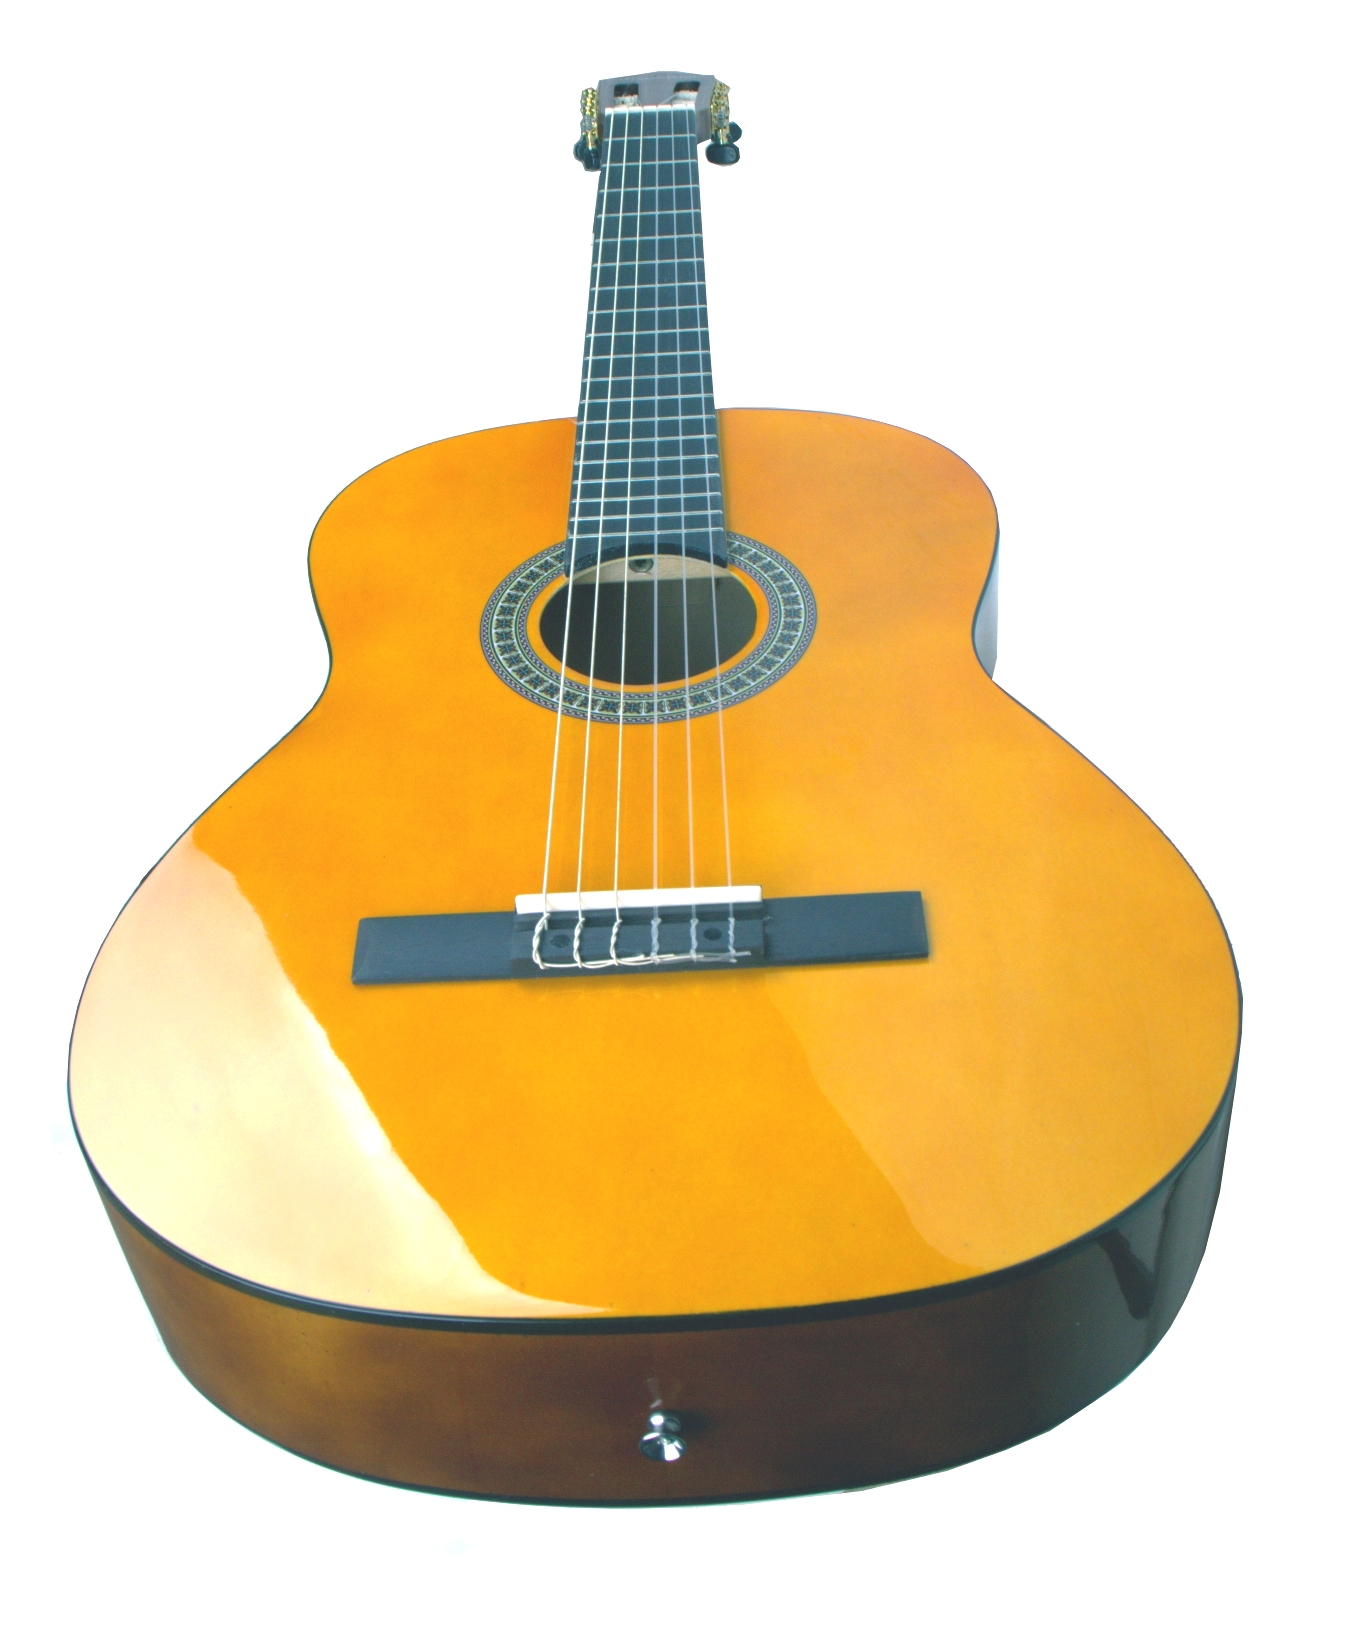 BARCELONA CG6 4/4 классическая гитара, размер 4/4, анкер, цвет натуральный